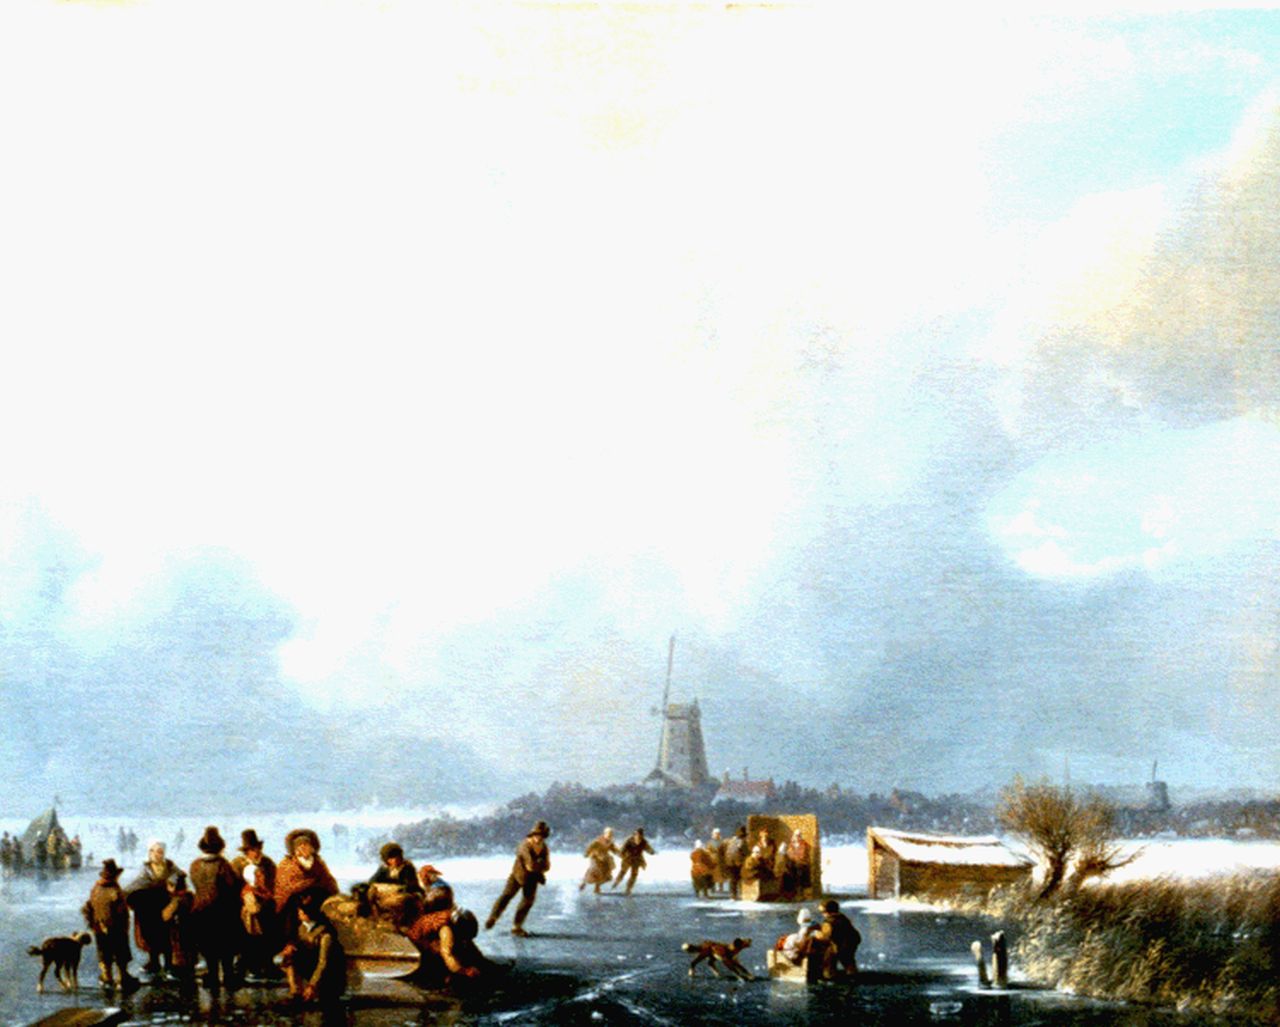 Stok J. van der | Jacobus van der Stok, Skaters and a 'koek en zopie' on a frozen waterway, oil on canvas 48.0 x 60.0 cm